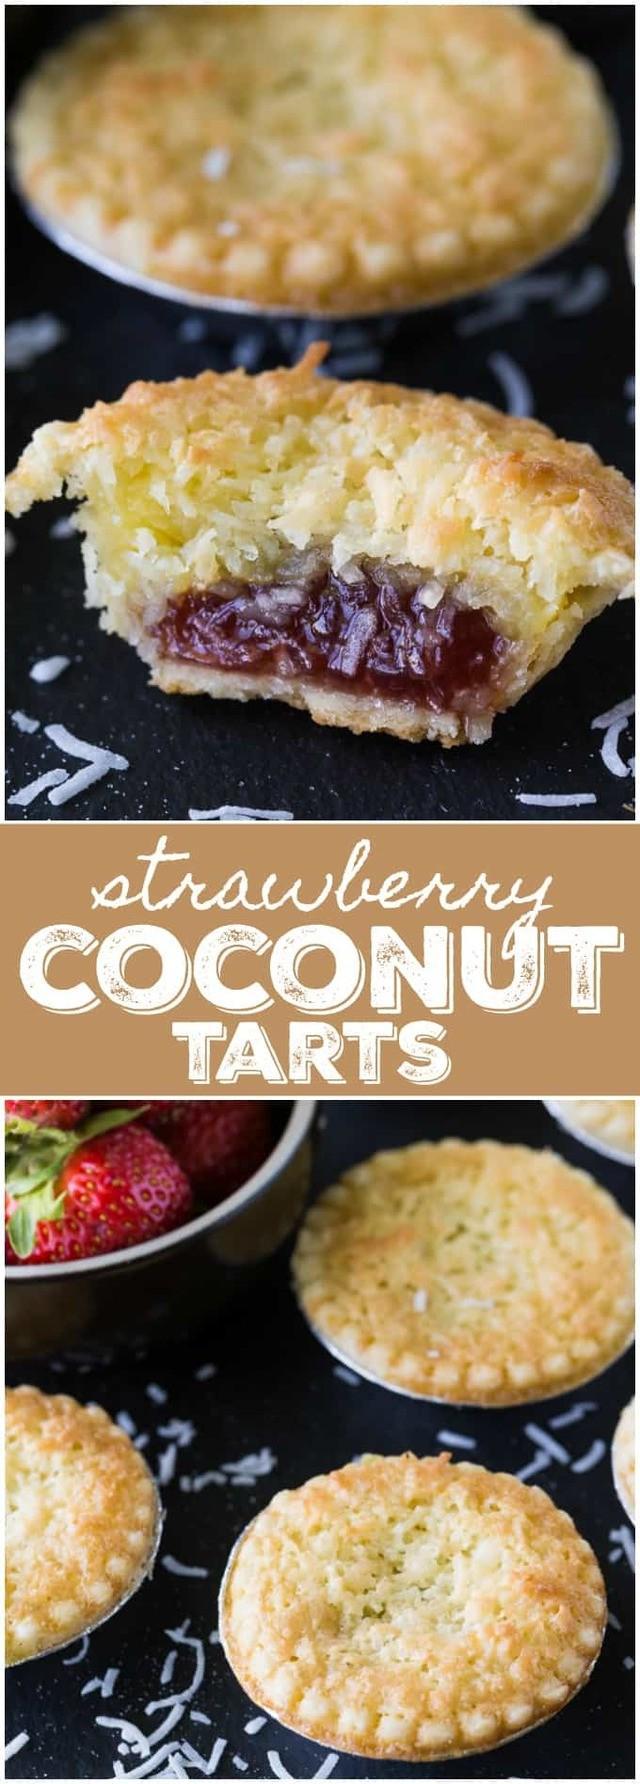 รูปภาพ:https://www.simplystacie.net/wp-content/uploads/2017/07/strawberry-coconut-tarts-collage.jpg